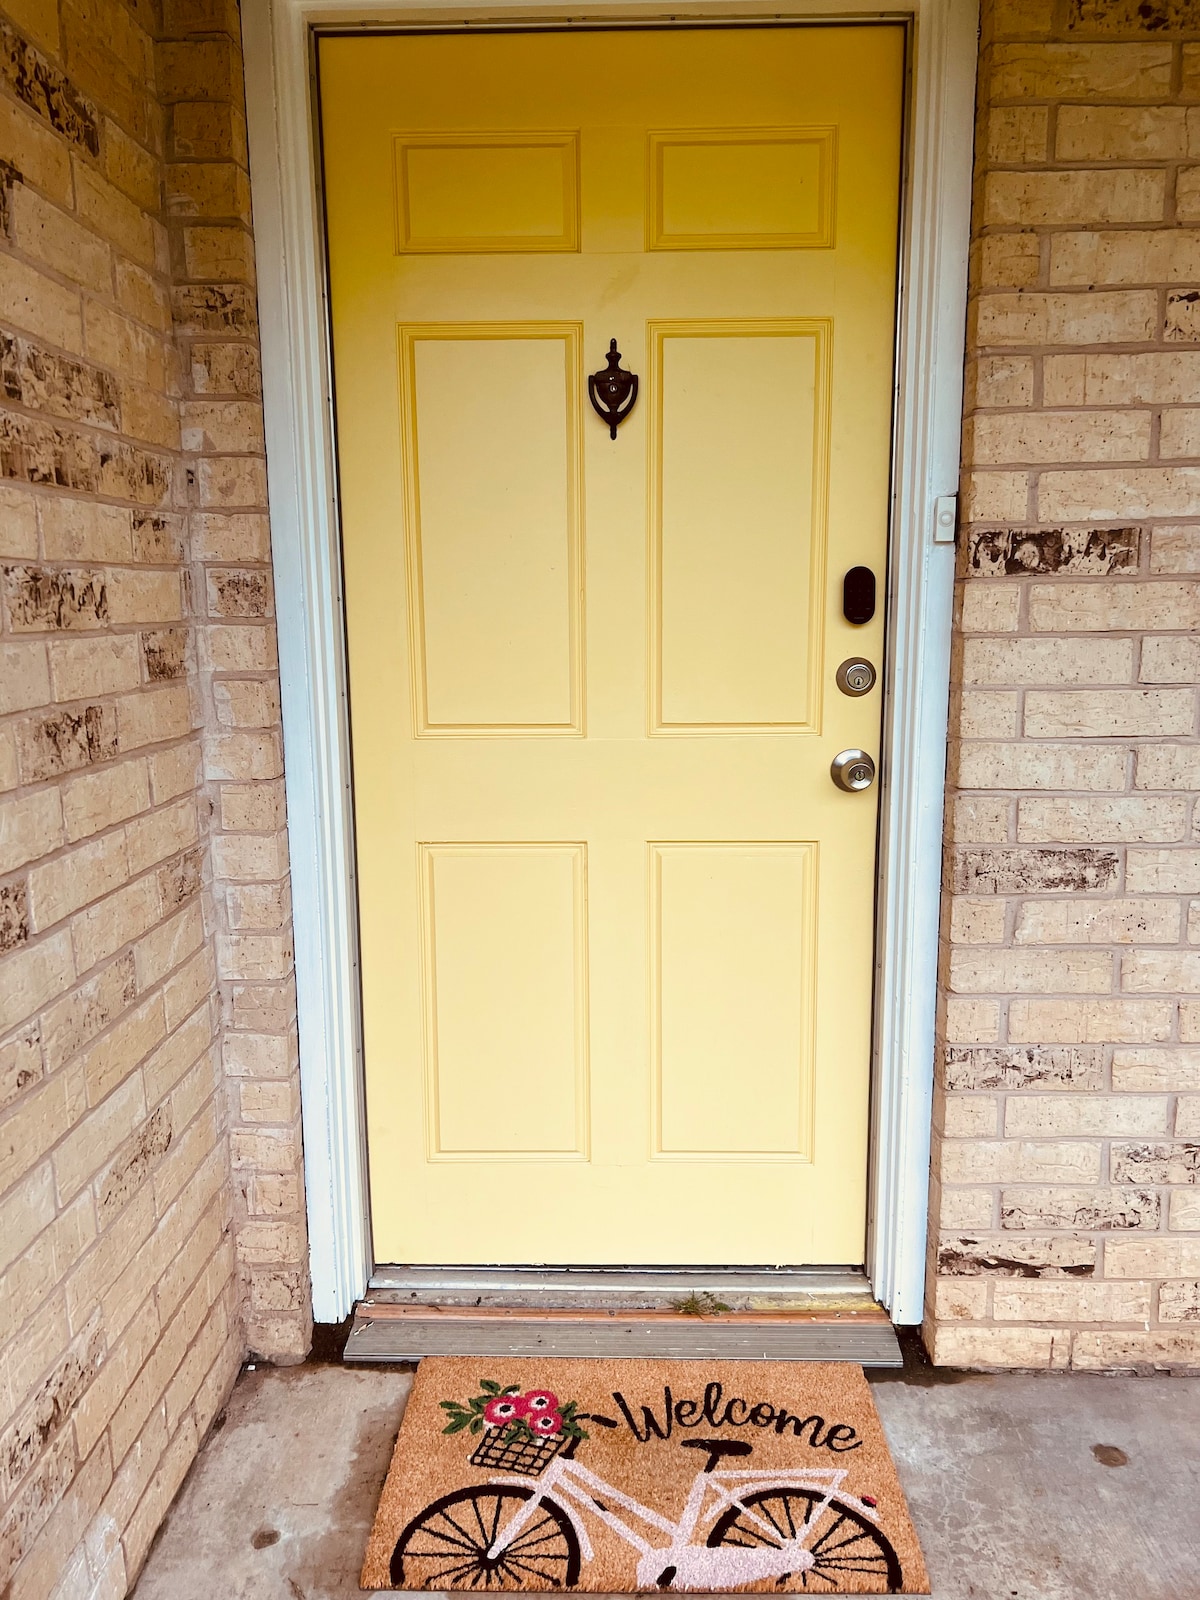 The Lil' Yellow Door8